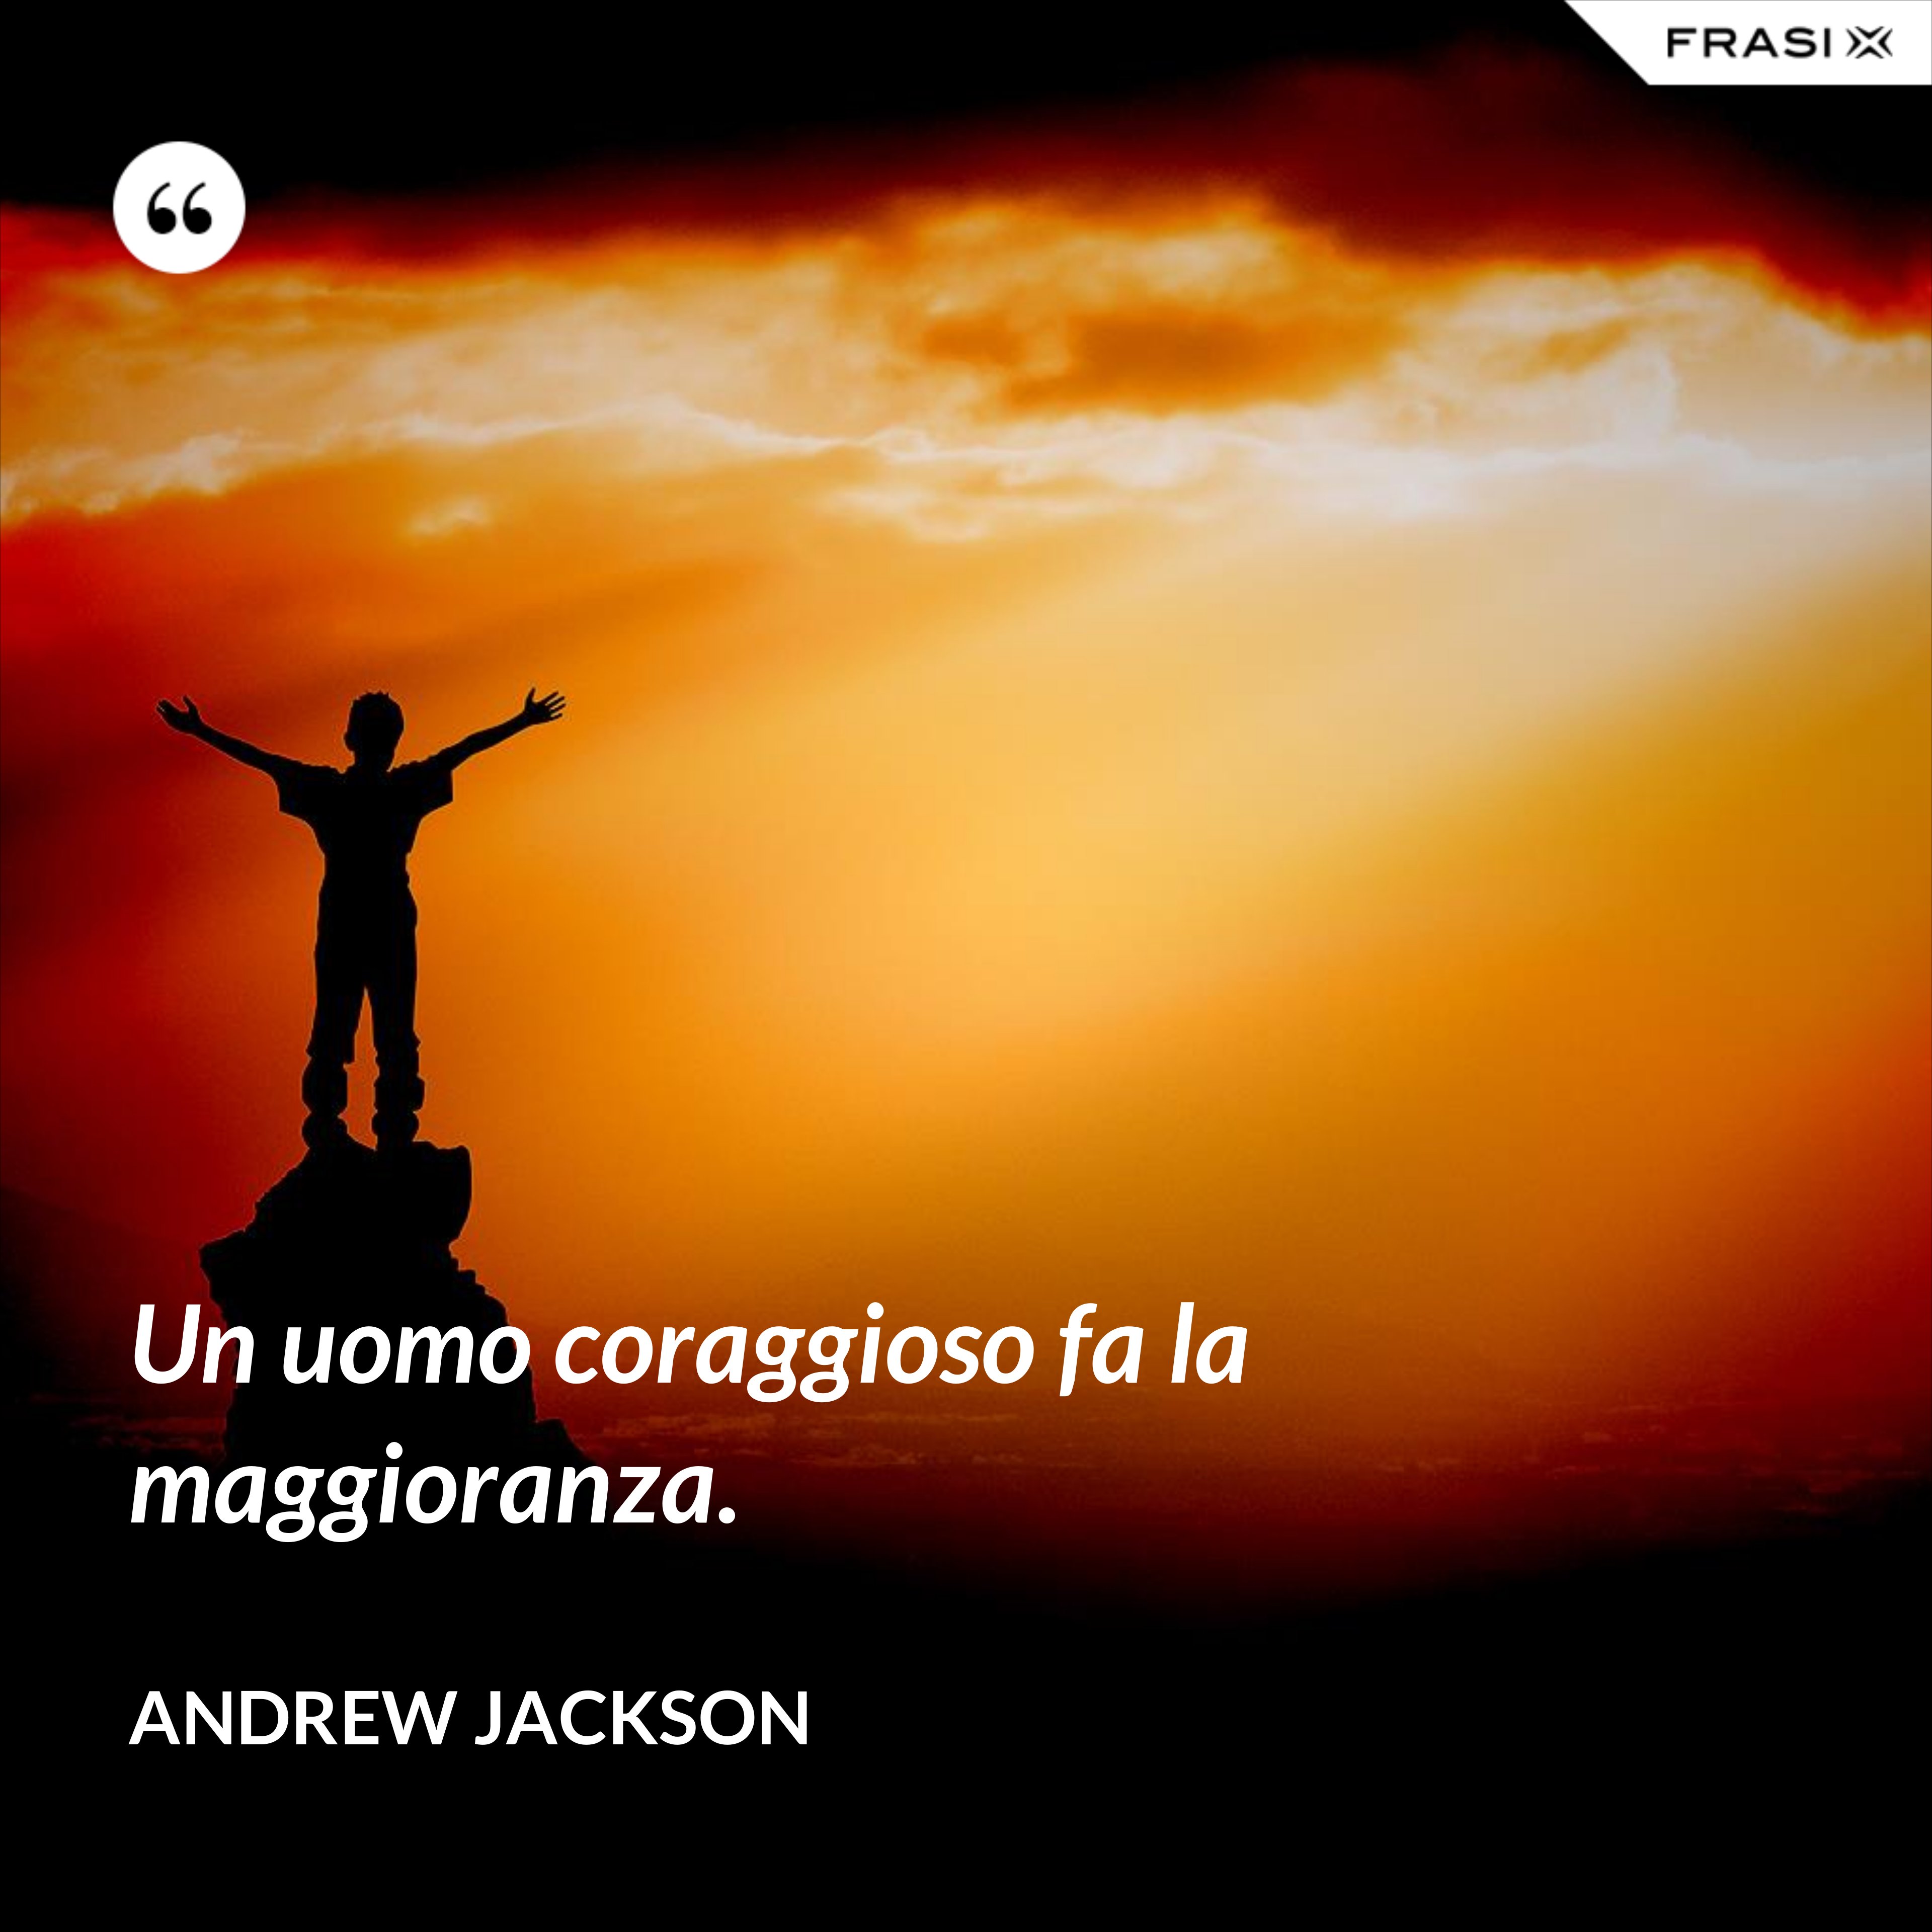 Un uomo coraggioso fa la maggioranza. - Andrew Jackson